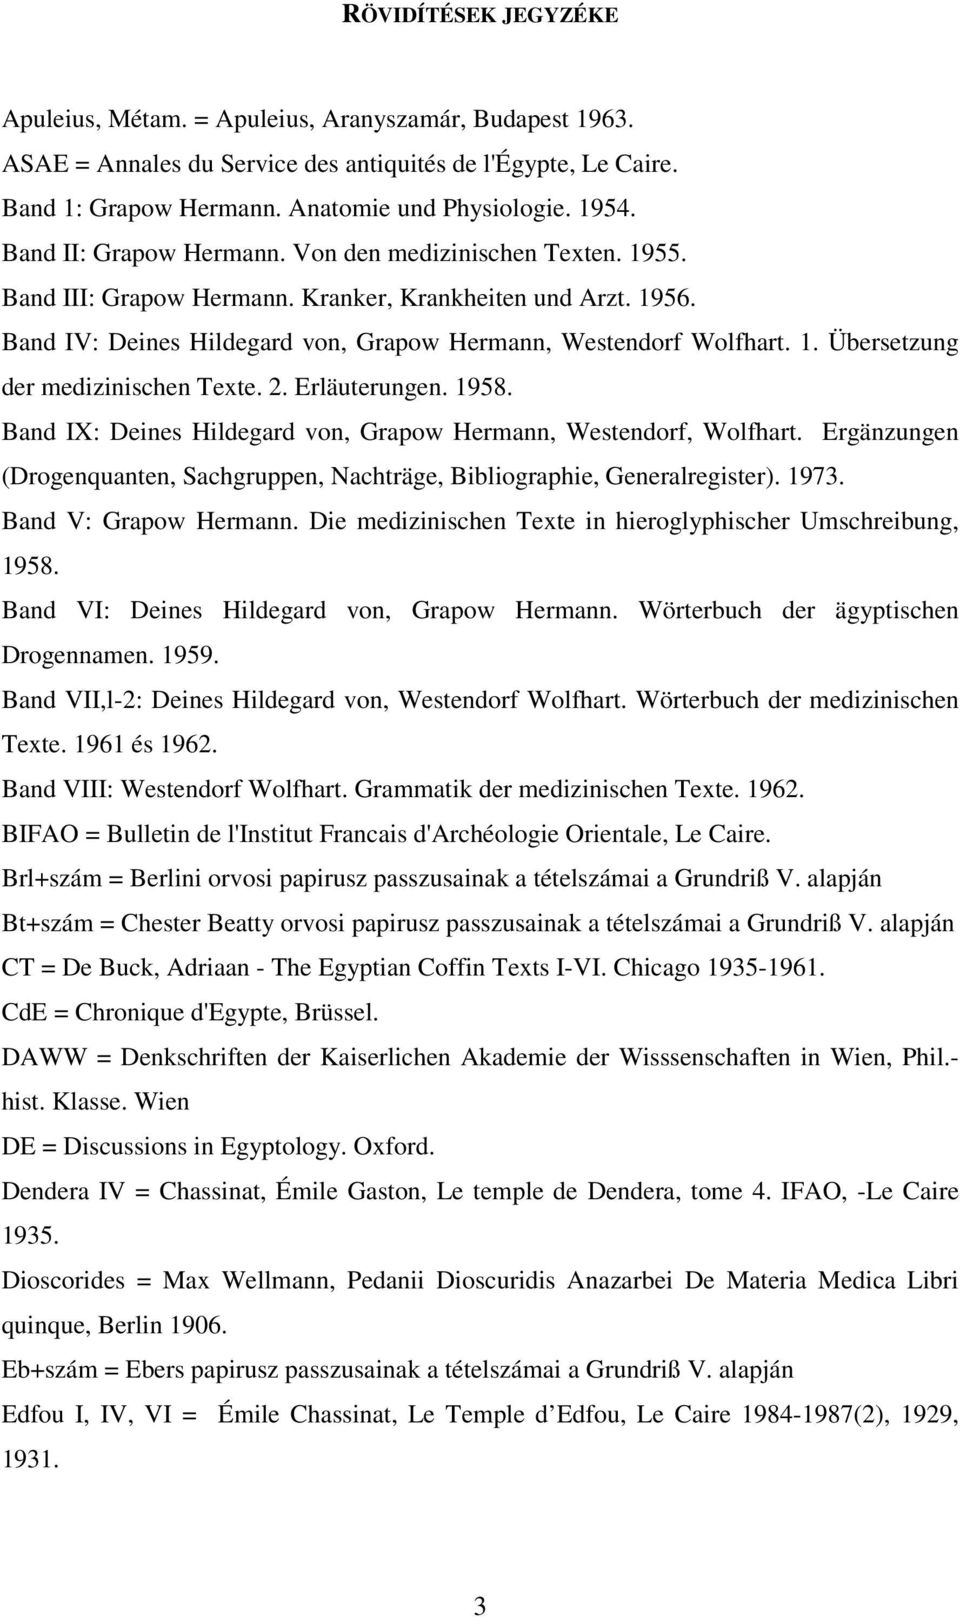 2. Erläuterungen. 1958. Band IX: Deines Hildegard von, Grapow Hermann, Westendorf, Wolfhart. Ergänzungen (Drogenquanten, Sachgruppen, Nachträge, Bibliographie, Generalregister). 1973.